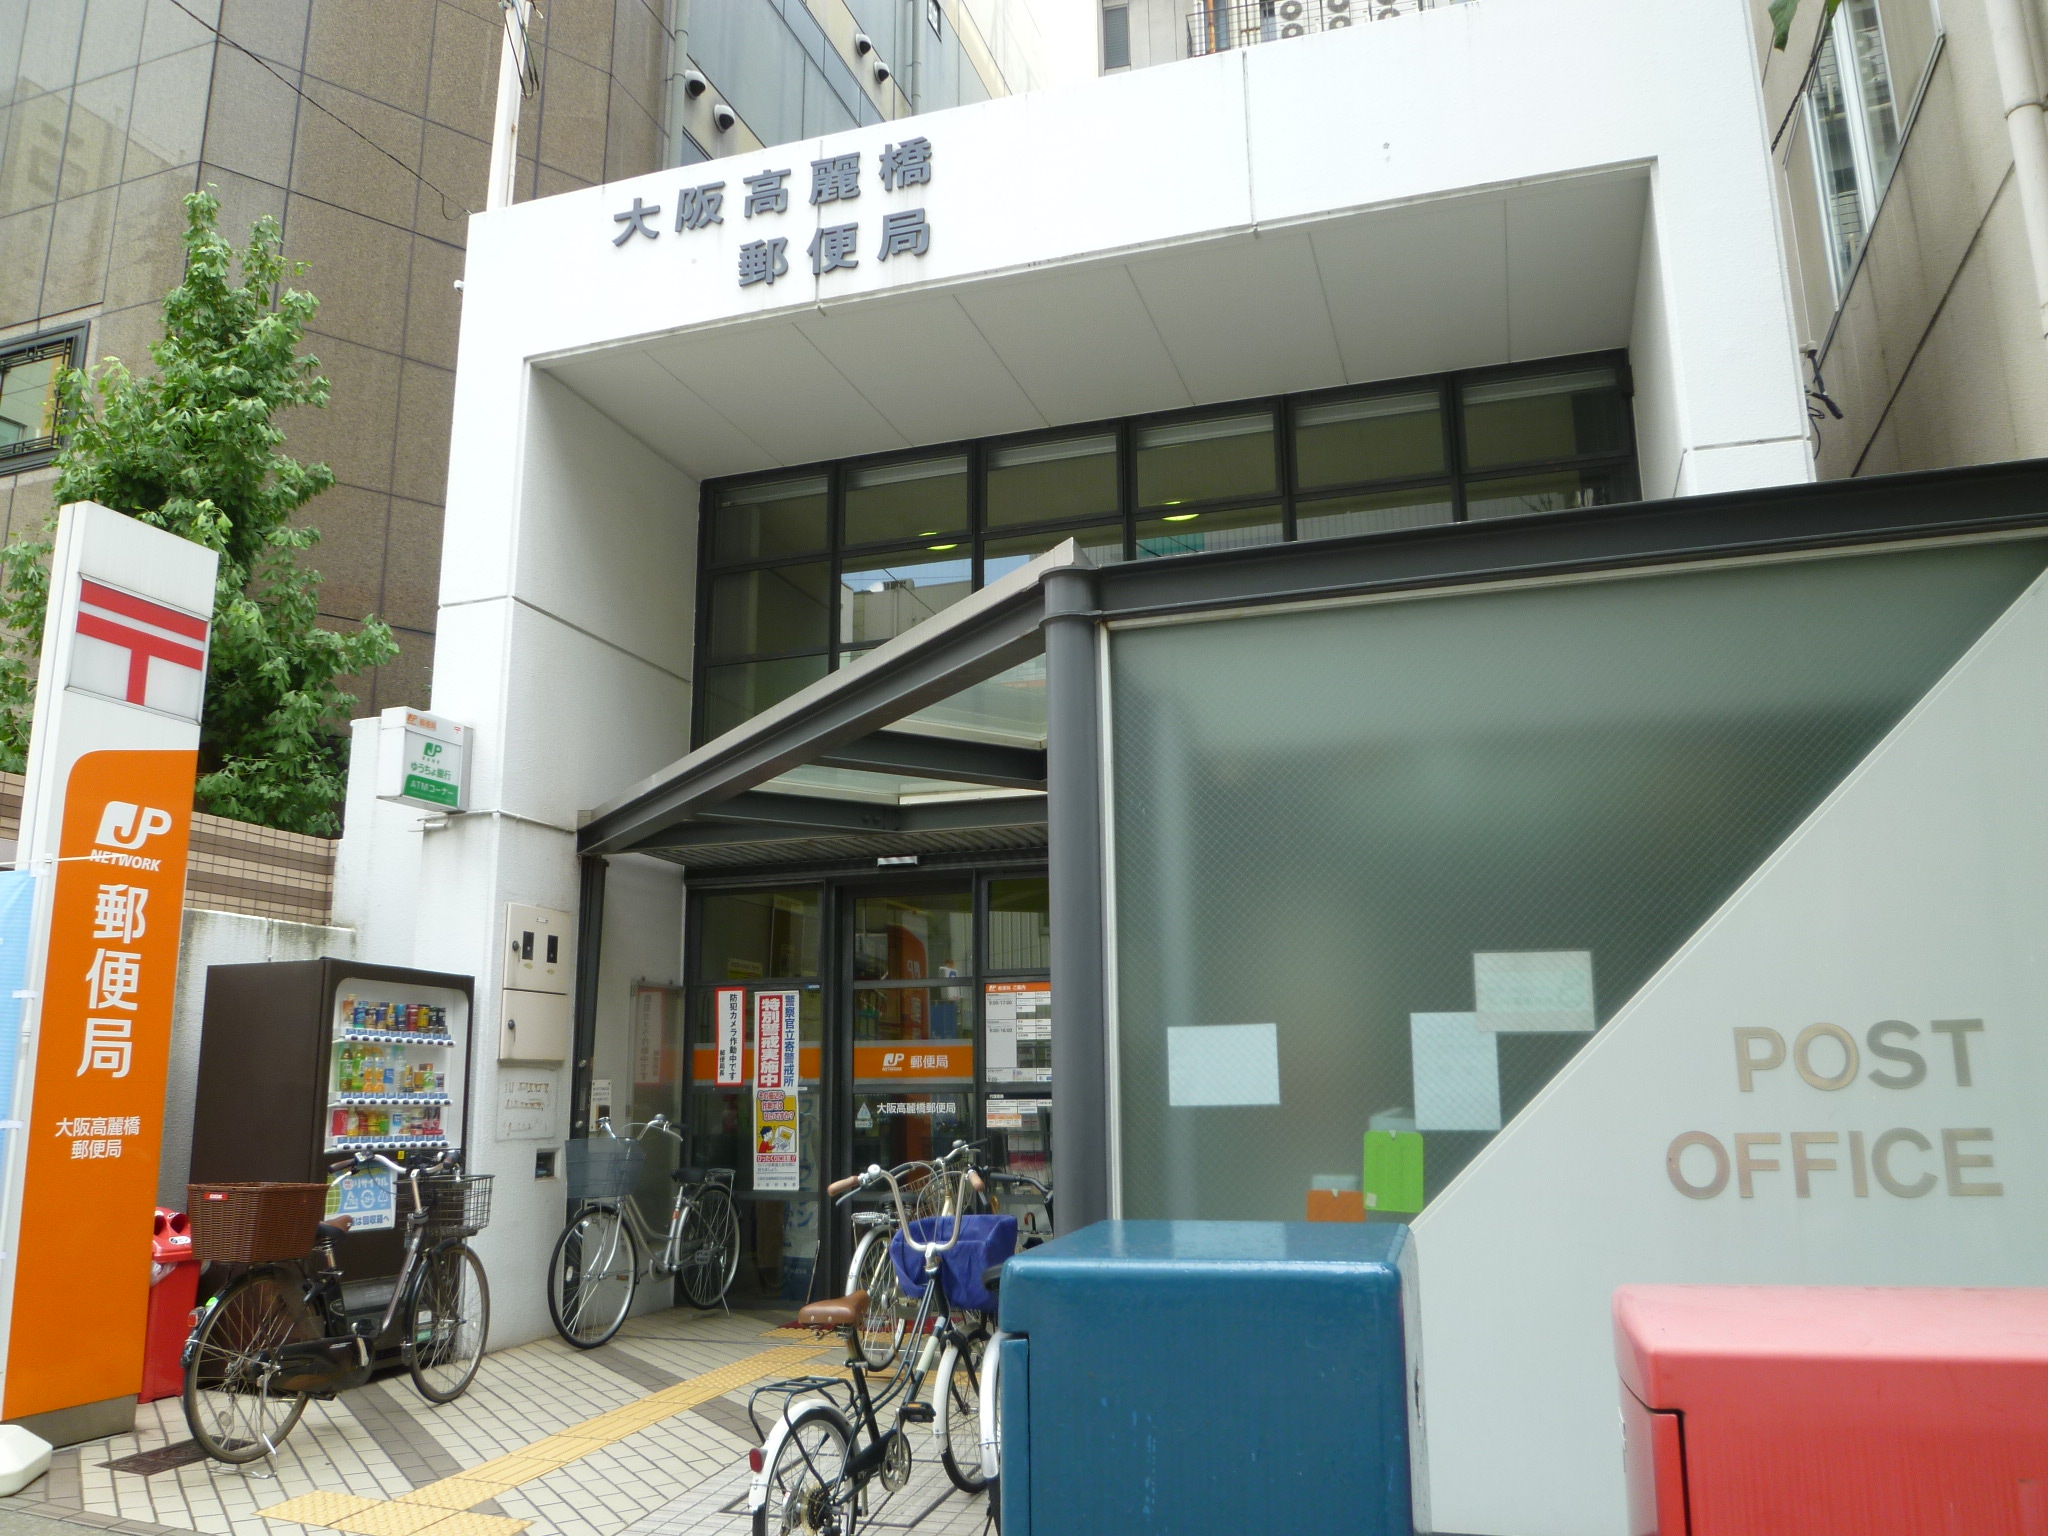 post office. 289m to Osaka Kōraibashi post office (post office)